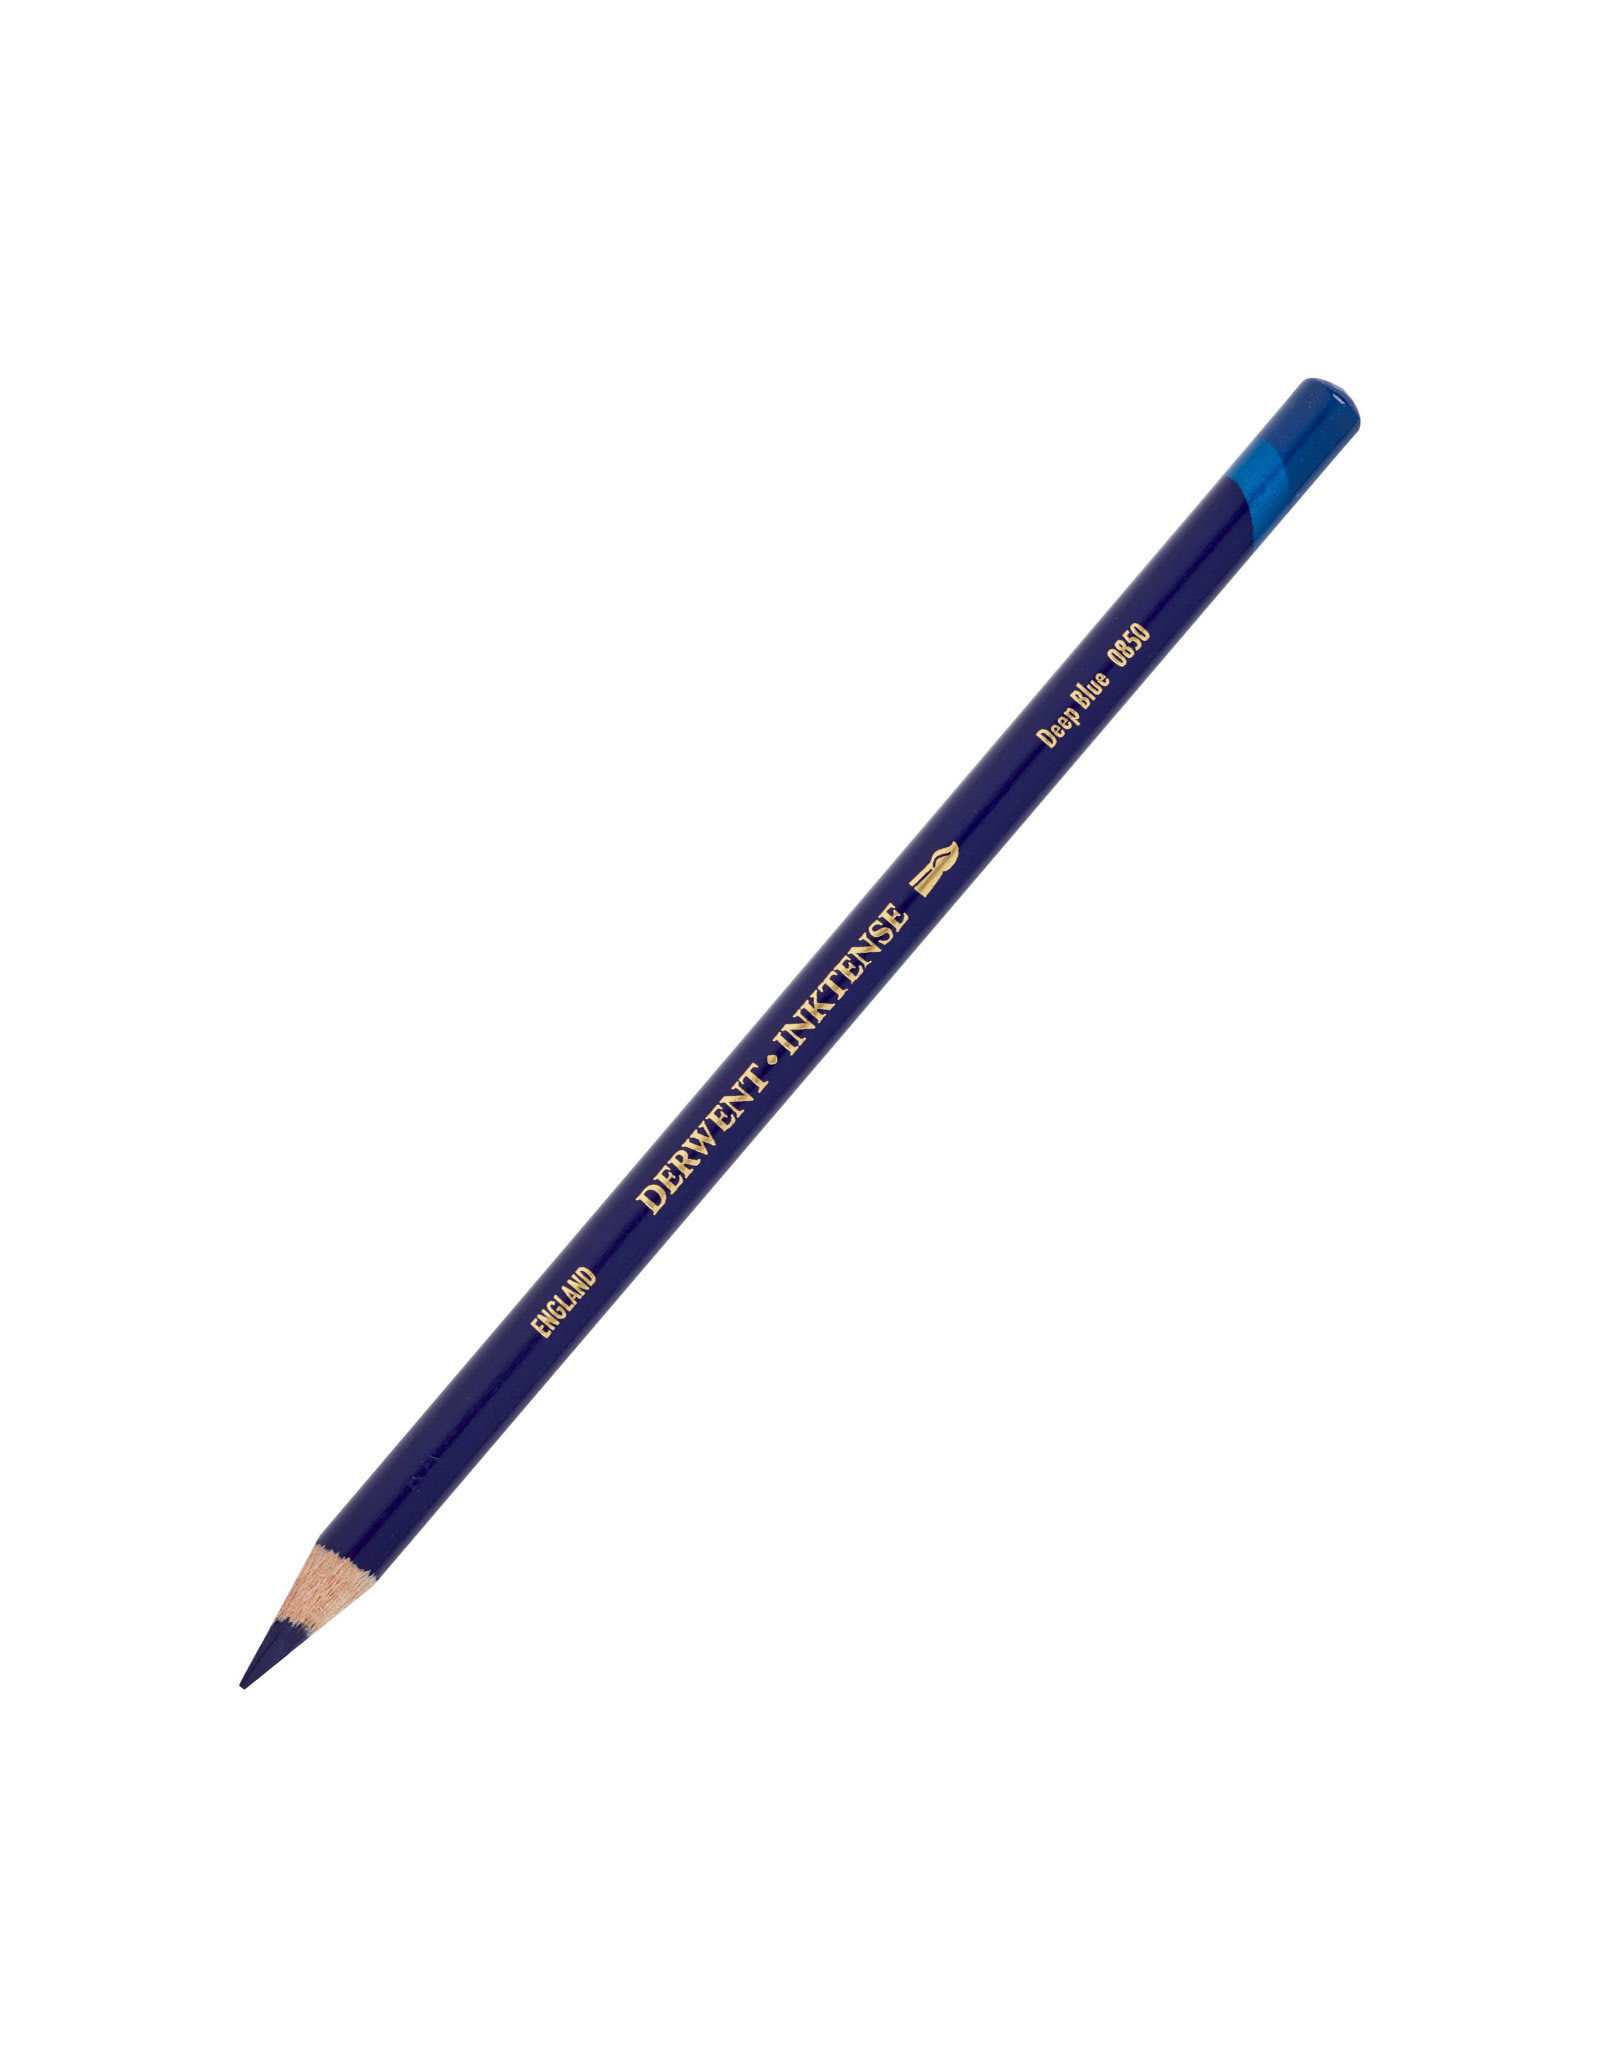 Derwent Derwent Inktense Pencil, Deep Blue